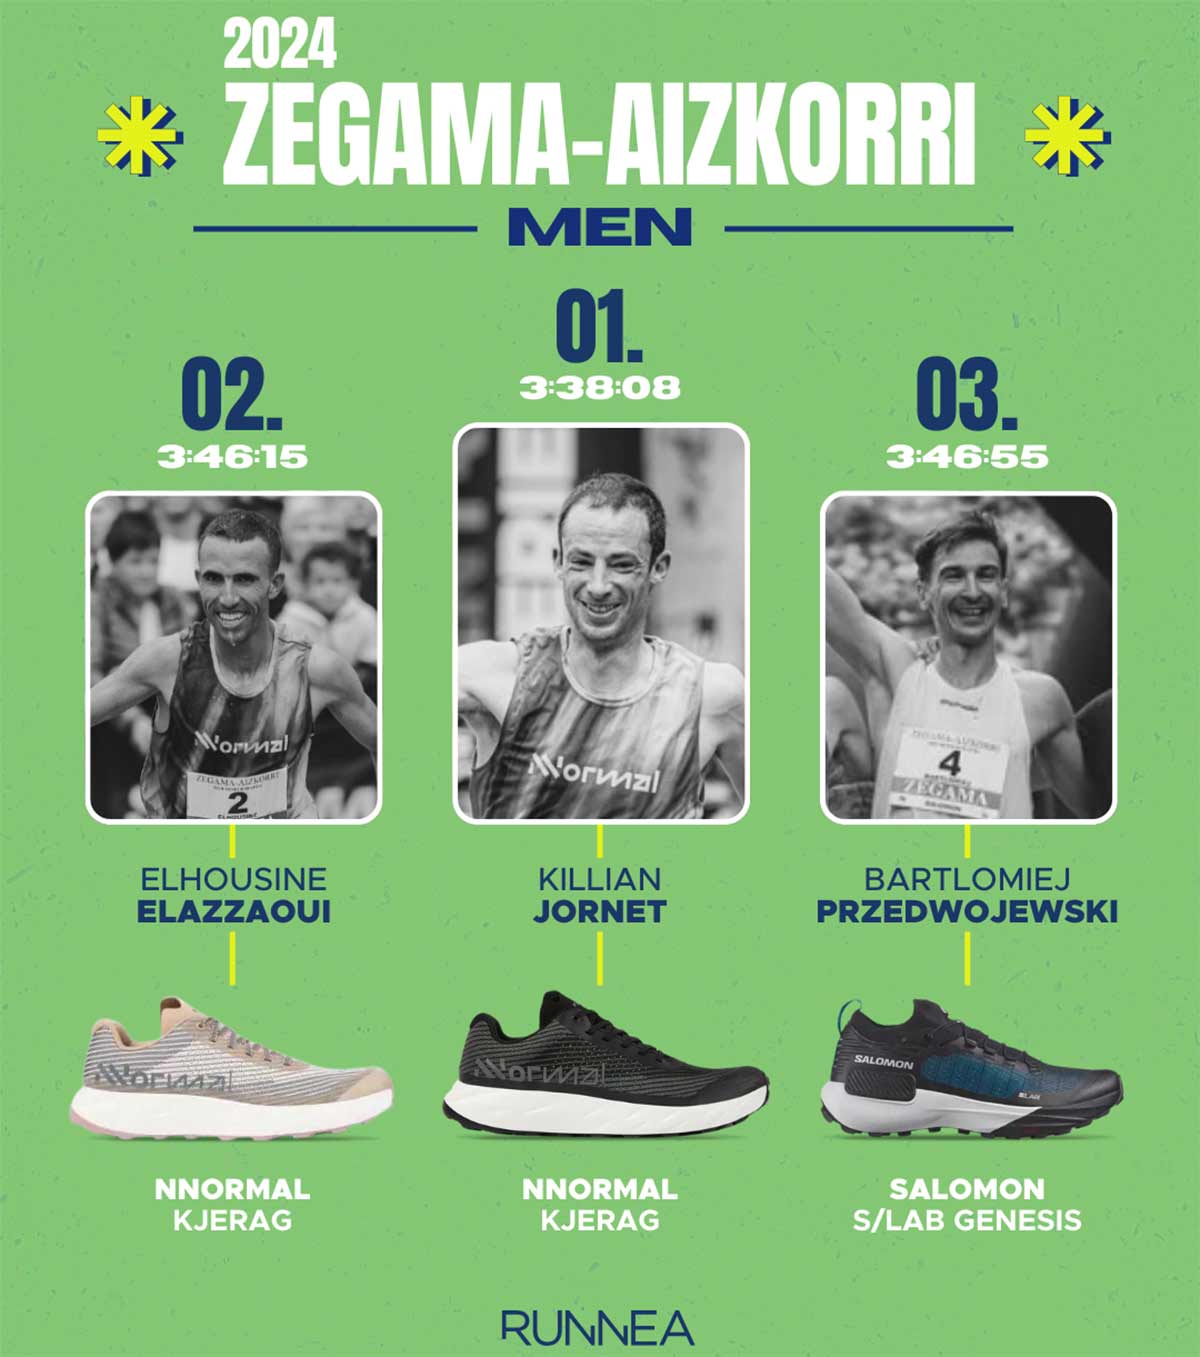 Chaussures trail running gagnantes de la Zegama-Aizkorri 2024 pour hommes